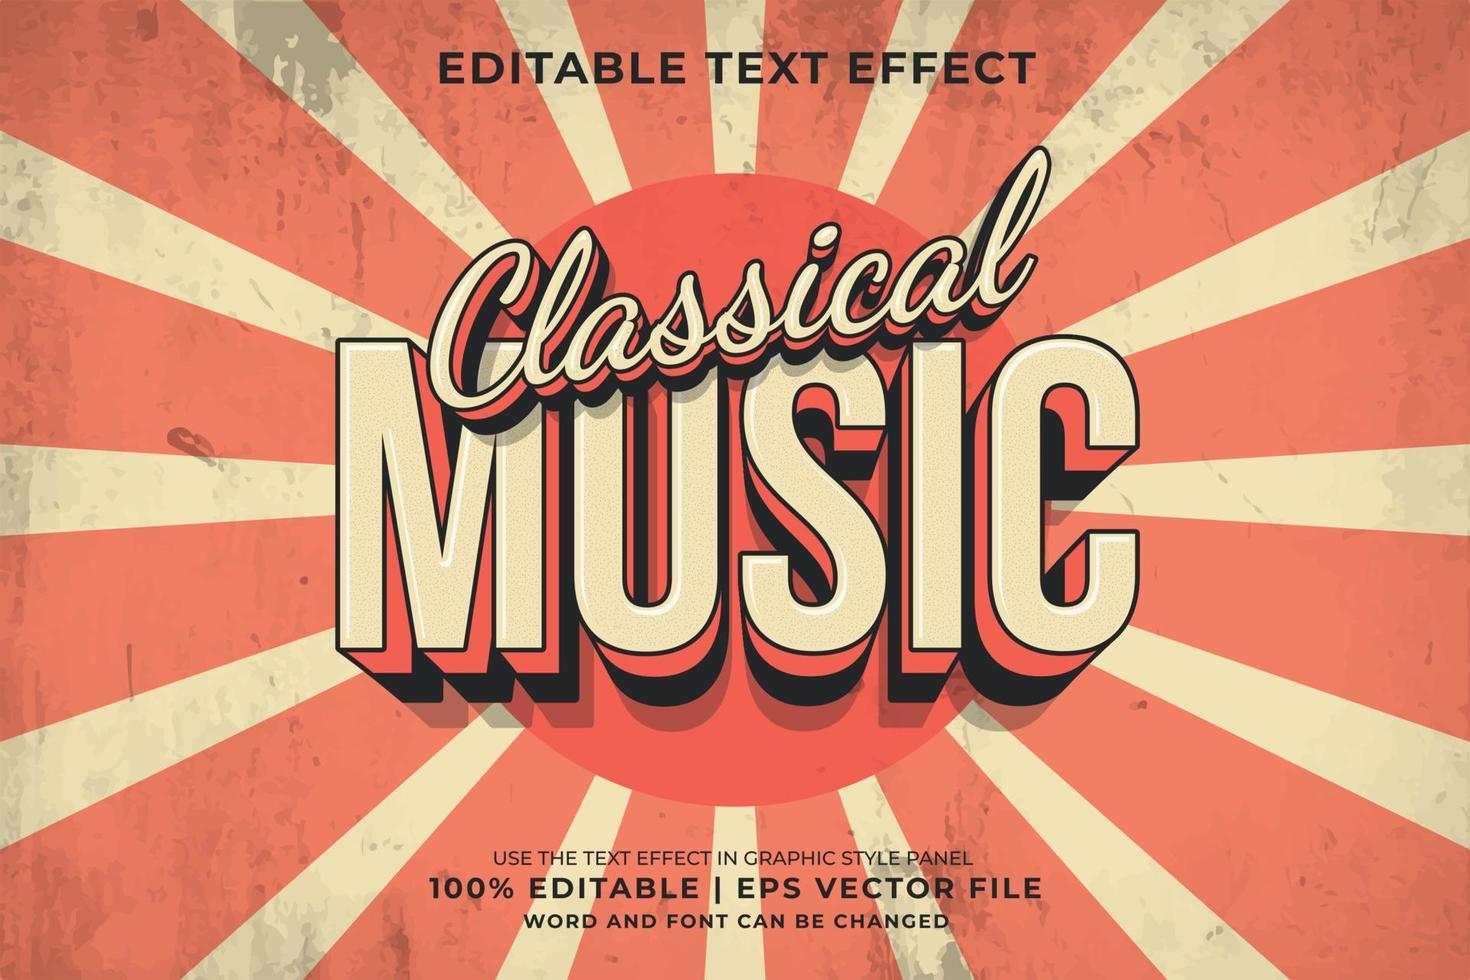 Bearbeitbarer Texteffekt - Premium-Vektor im Retro-Vorlagenstil der klassischen Musik vektor